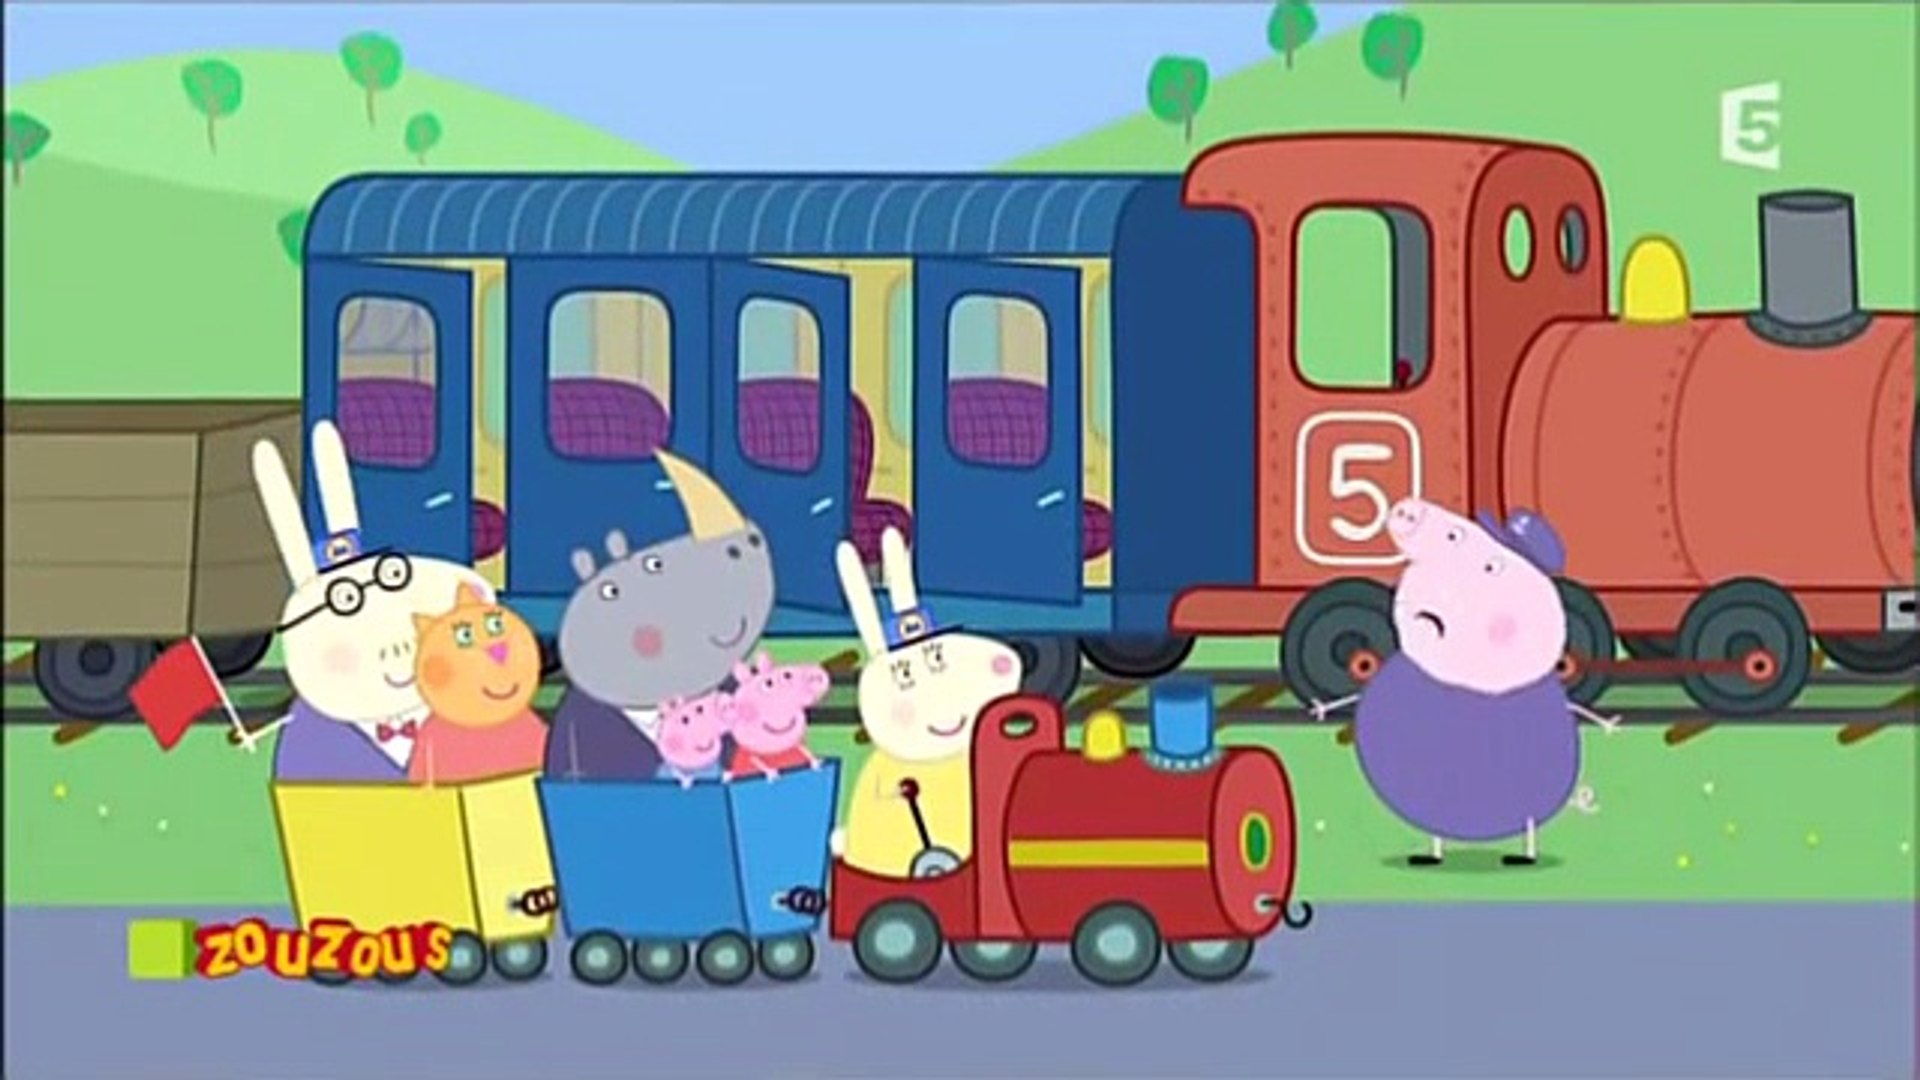 PEPPA PIG Le train de Papy Pig + 1 personnage dès 2 ans